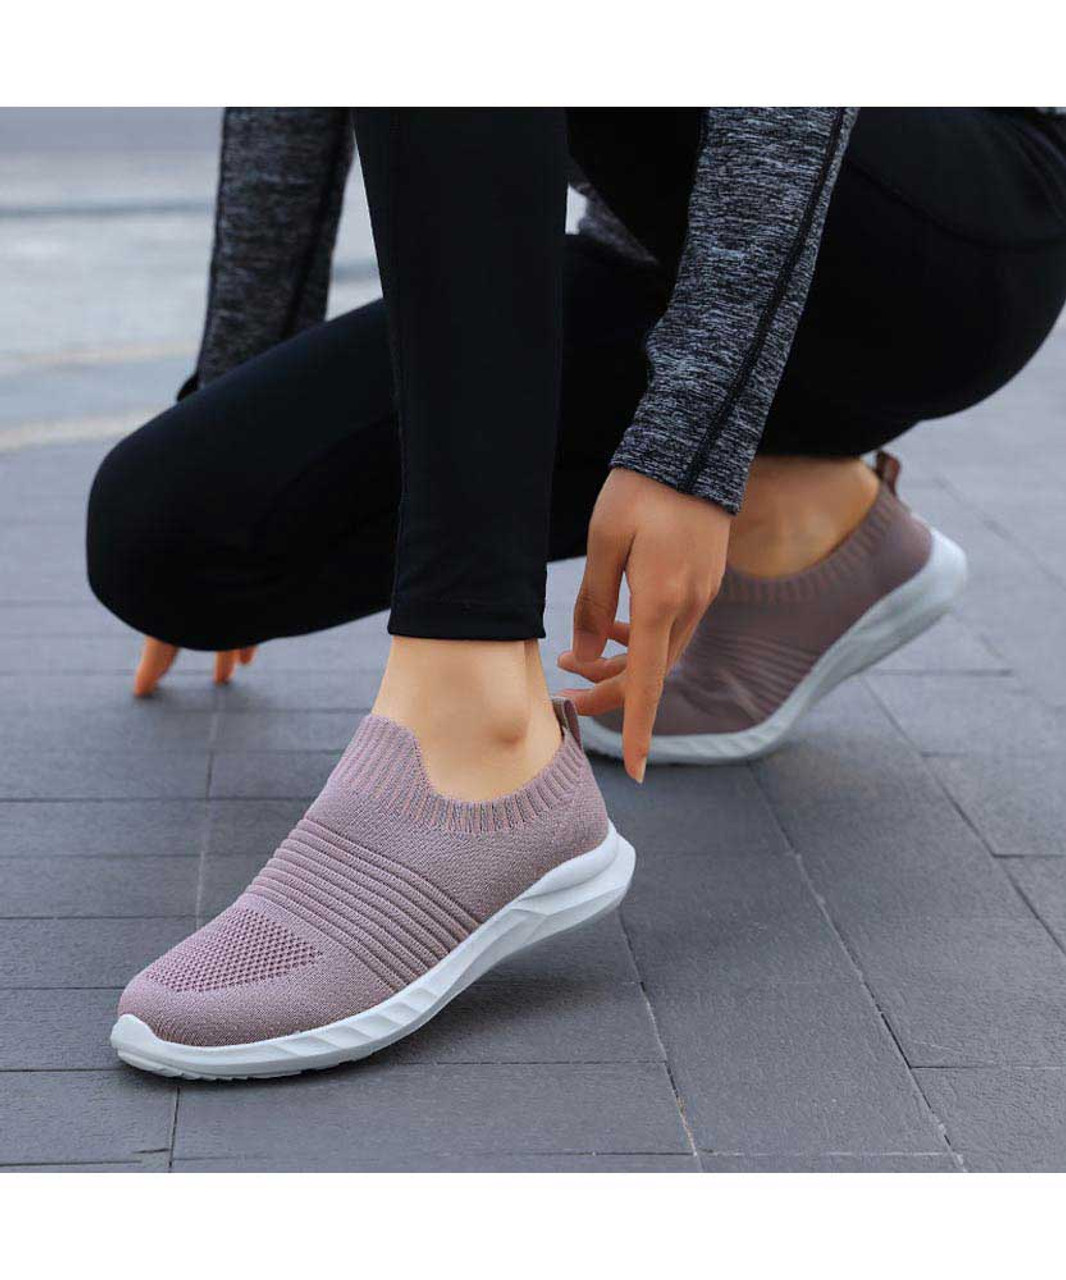 Pink stripe flyknit sock like entry slip on shoe sneaker | Womens ...